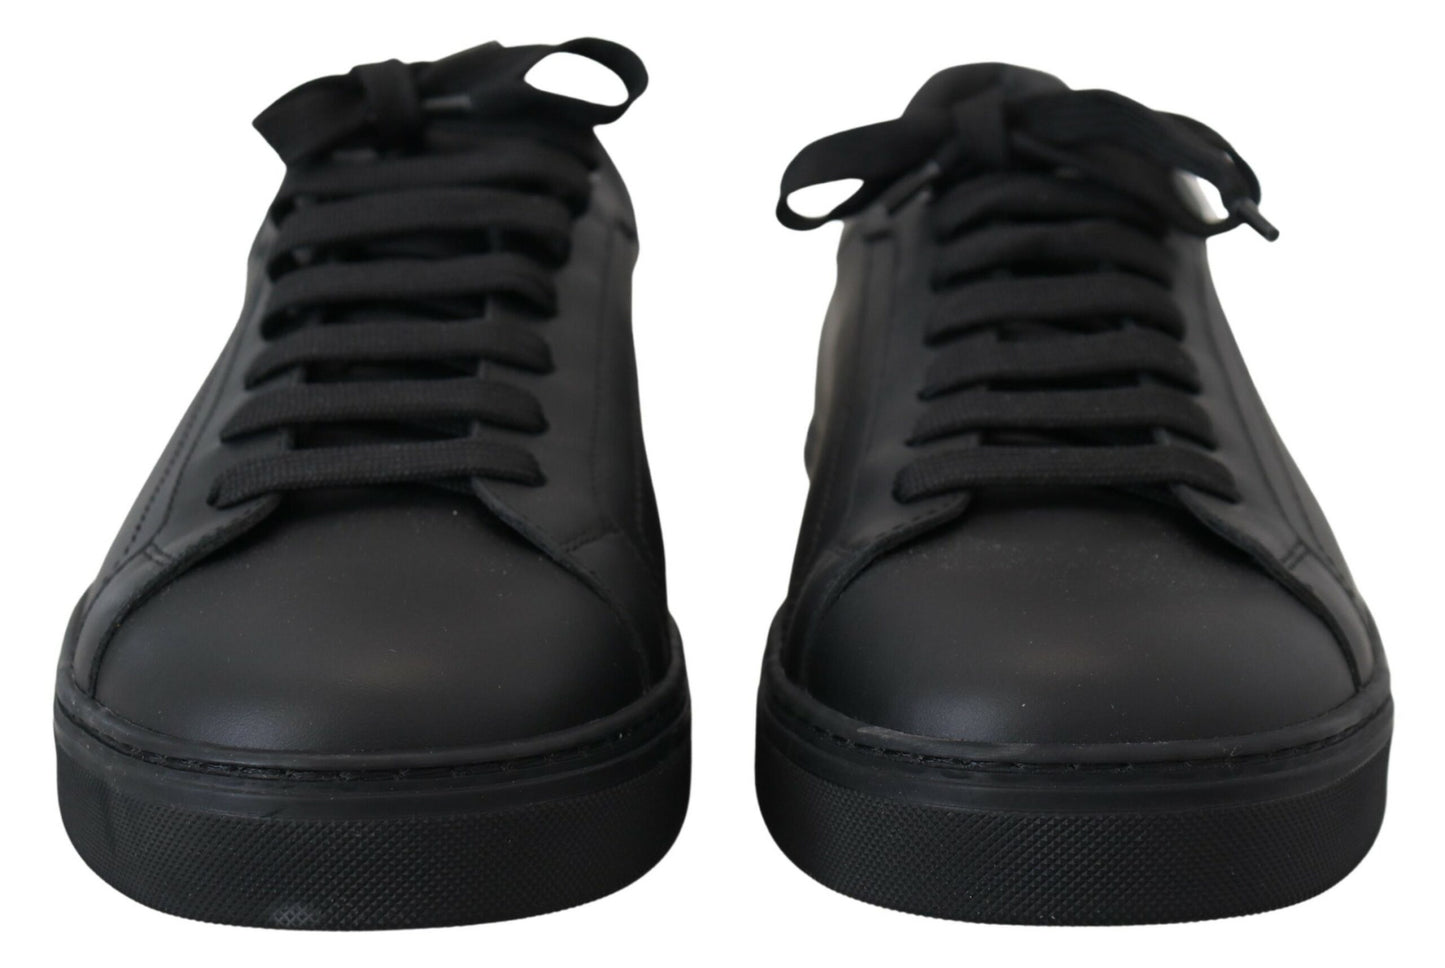 Sleek Black Low Top Leather Sneakers